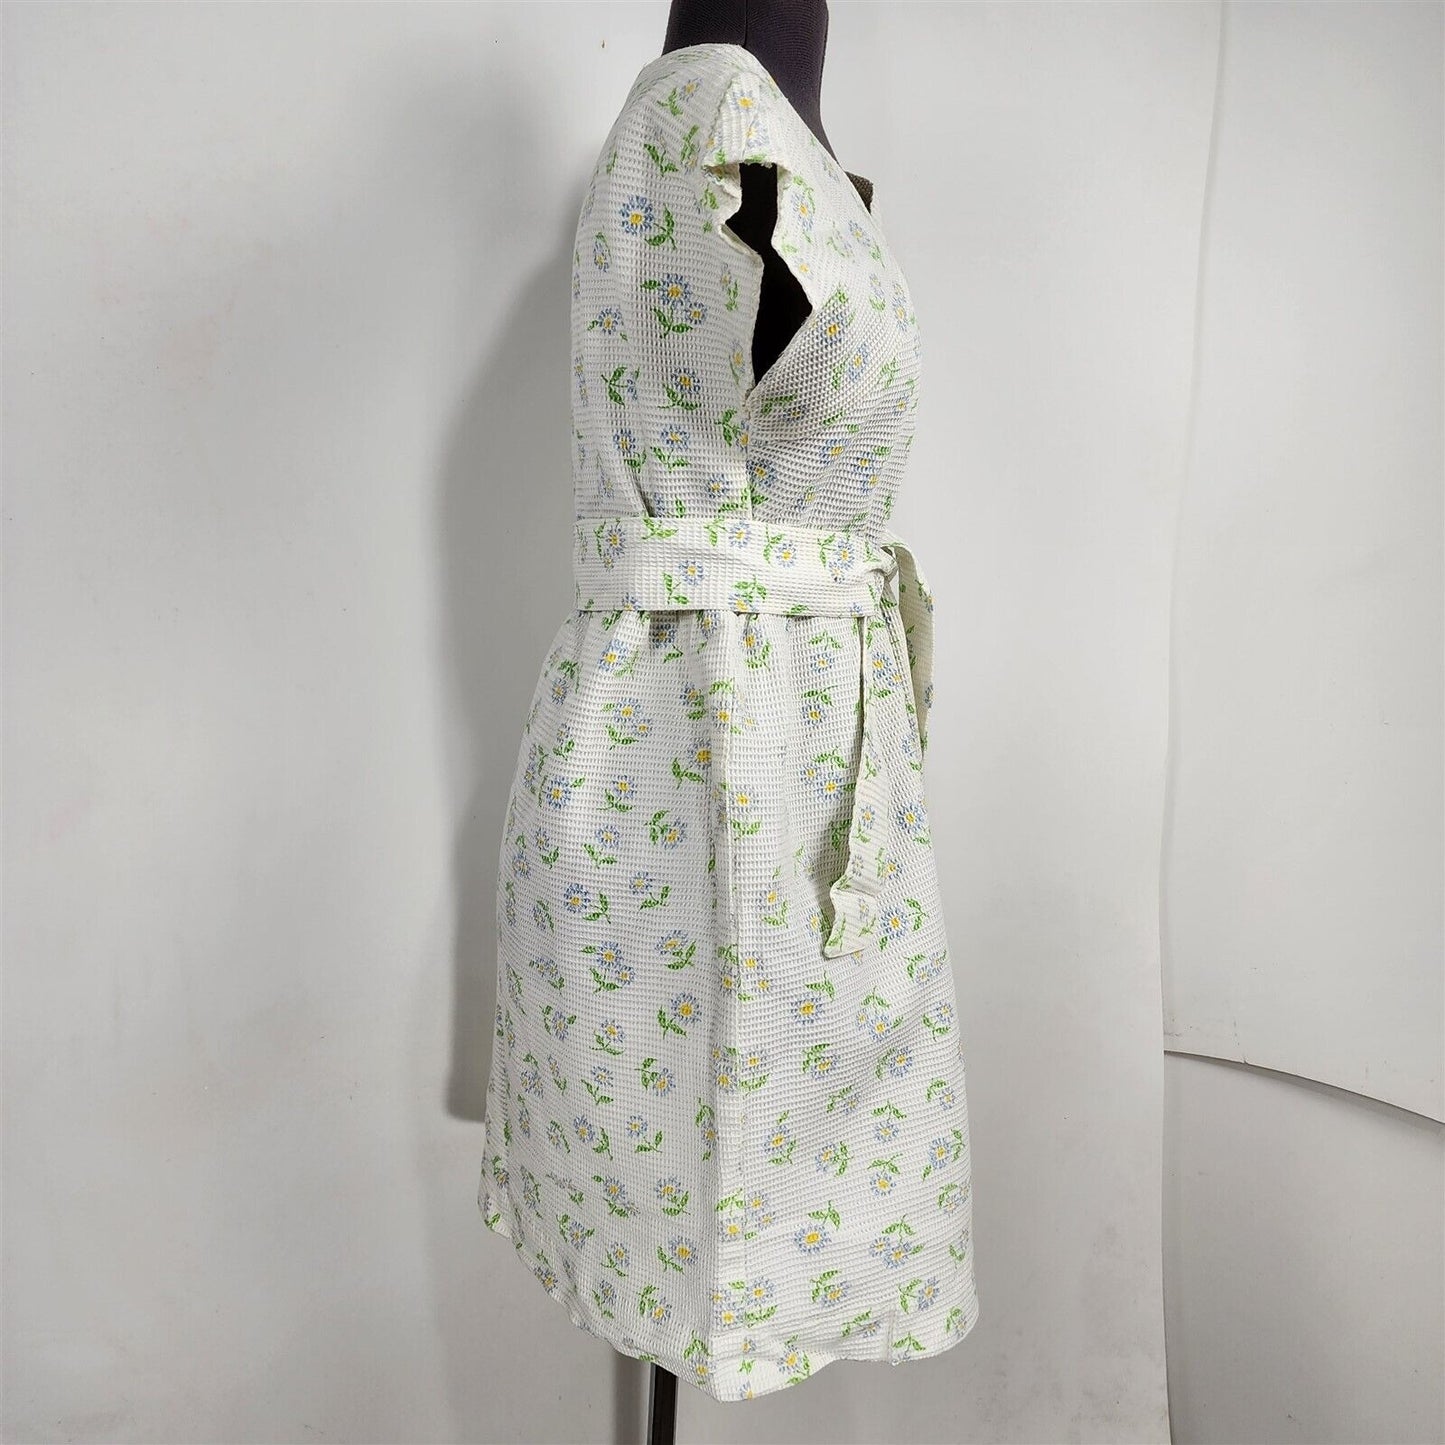 Vintage White Blue Floral Waffle Knit Short Sleeve Dress w/ Belt Volup